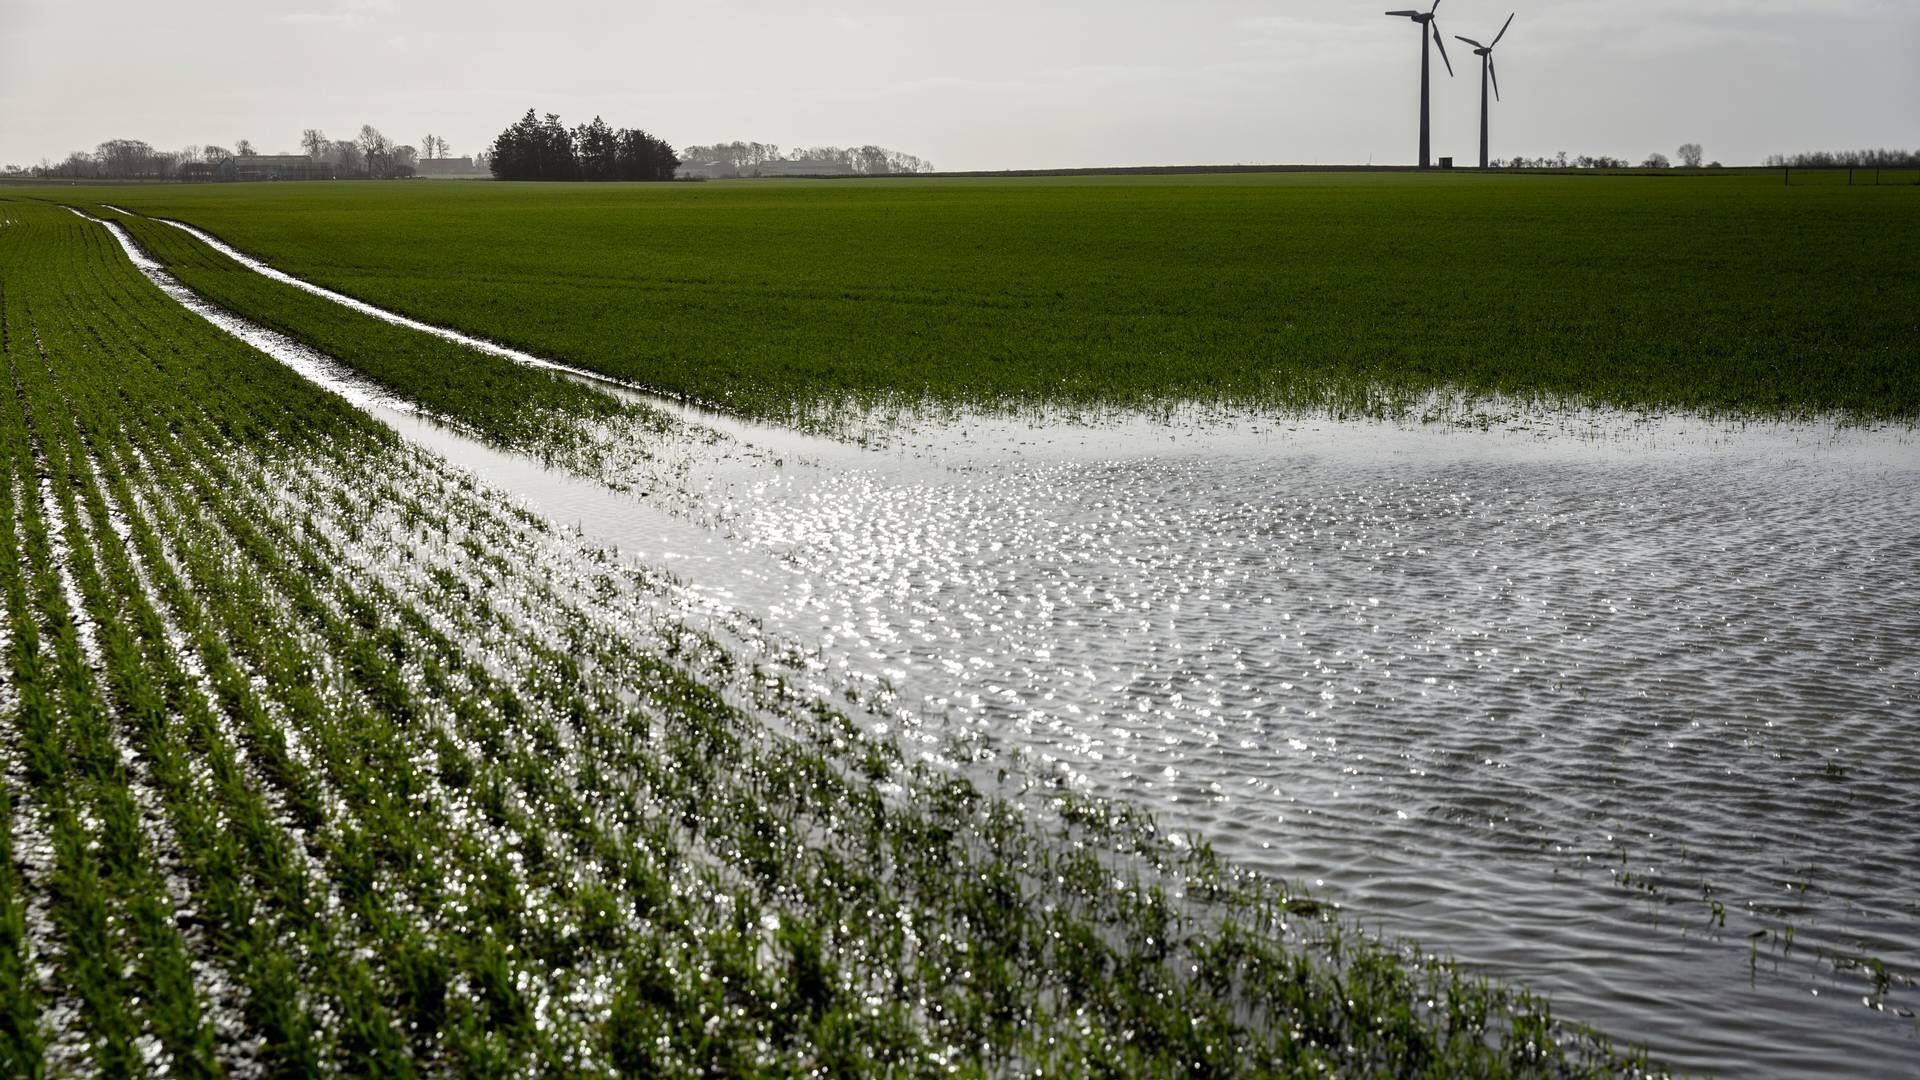 Generator Agro skruer op for jordopkøbene, blandt andet fordi der er stor konkurrence om landbrugsjord. Jorden bliver i første omgang forpagtet, men skal på sigt bruges til energiproduktion. Foto: Mads Nissen/Ritzau Scanpix | Foto: Mads Nissen/Ritzau Scanpix